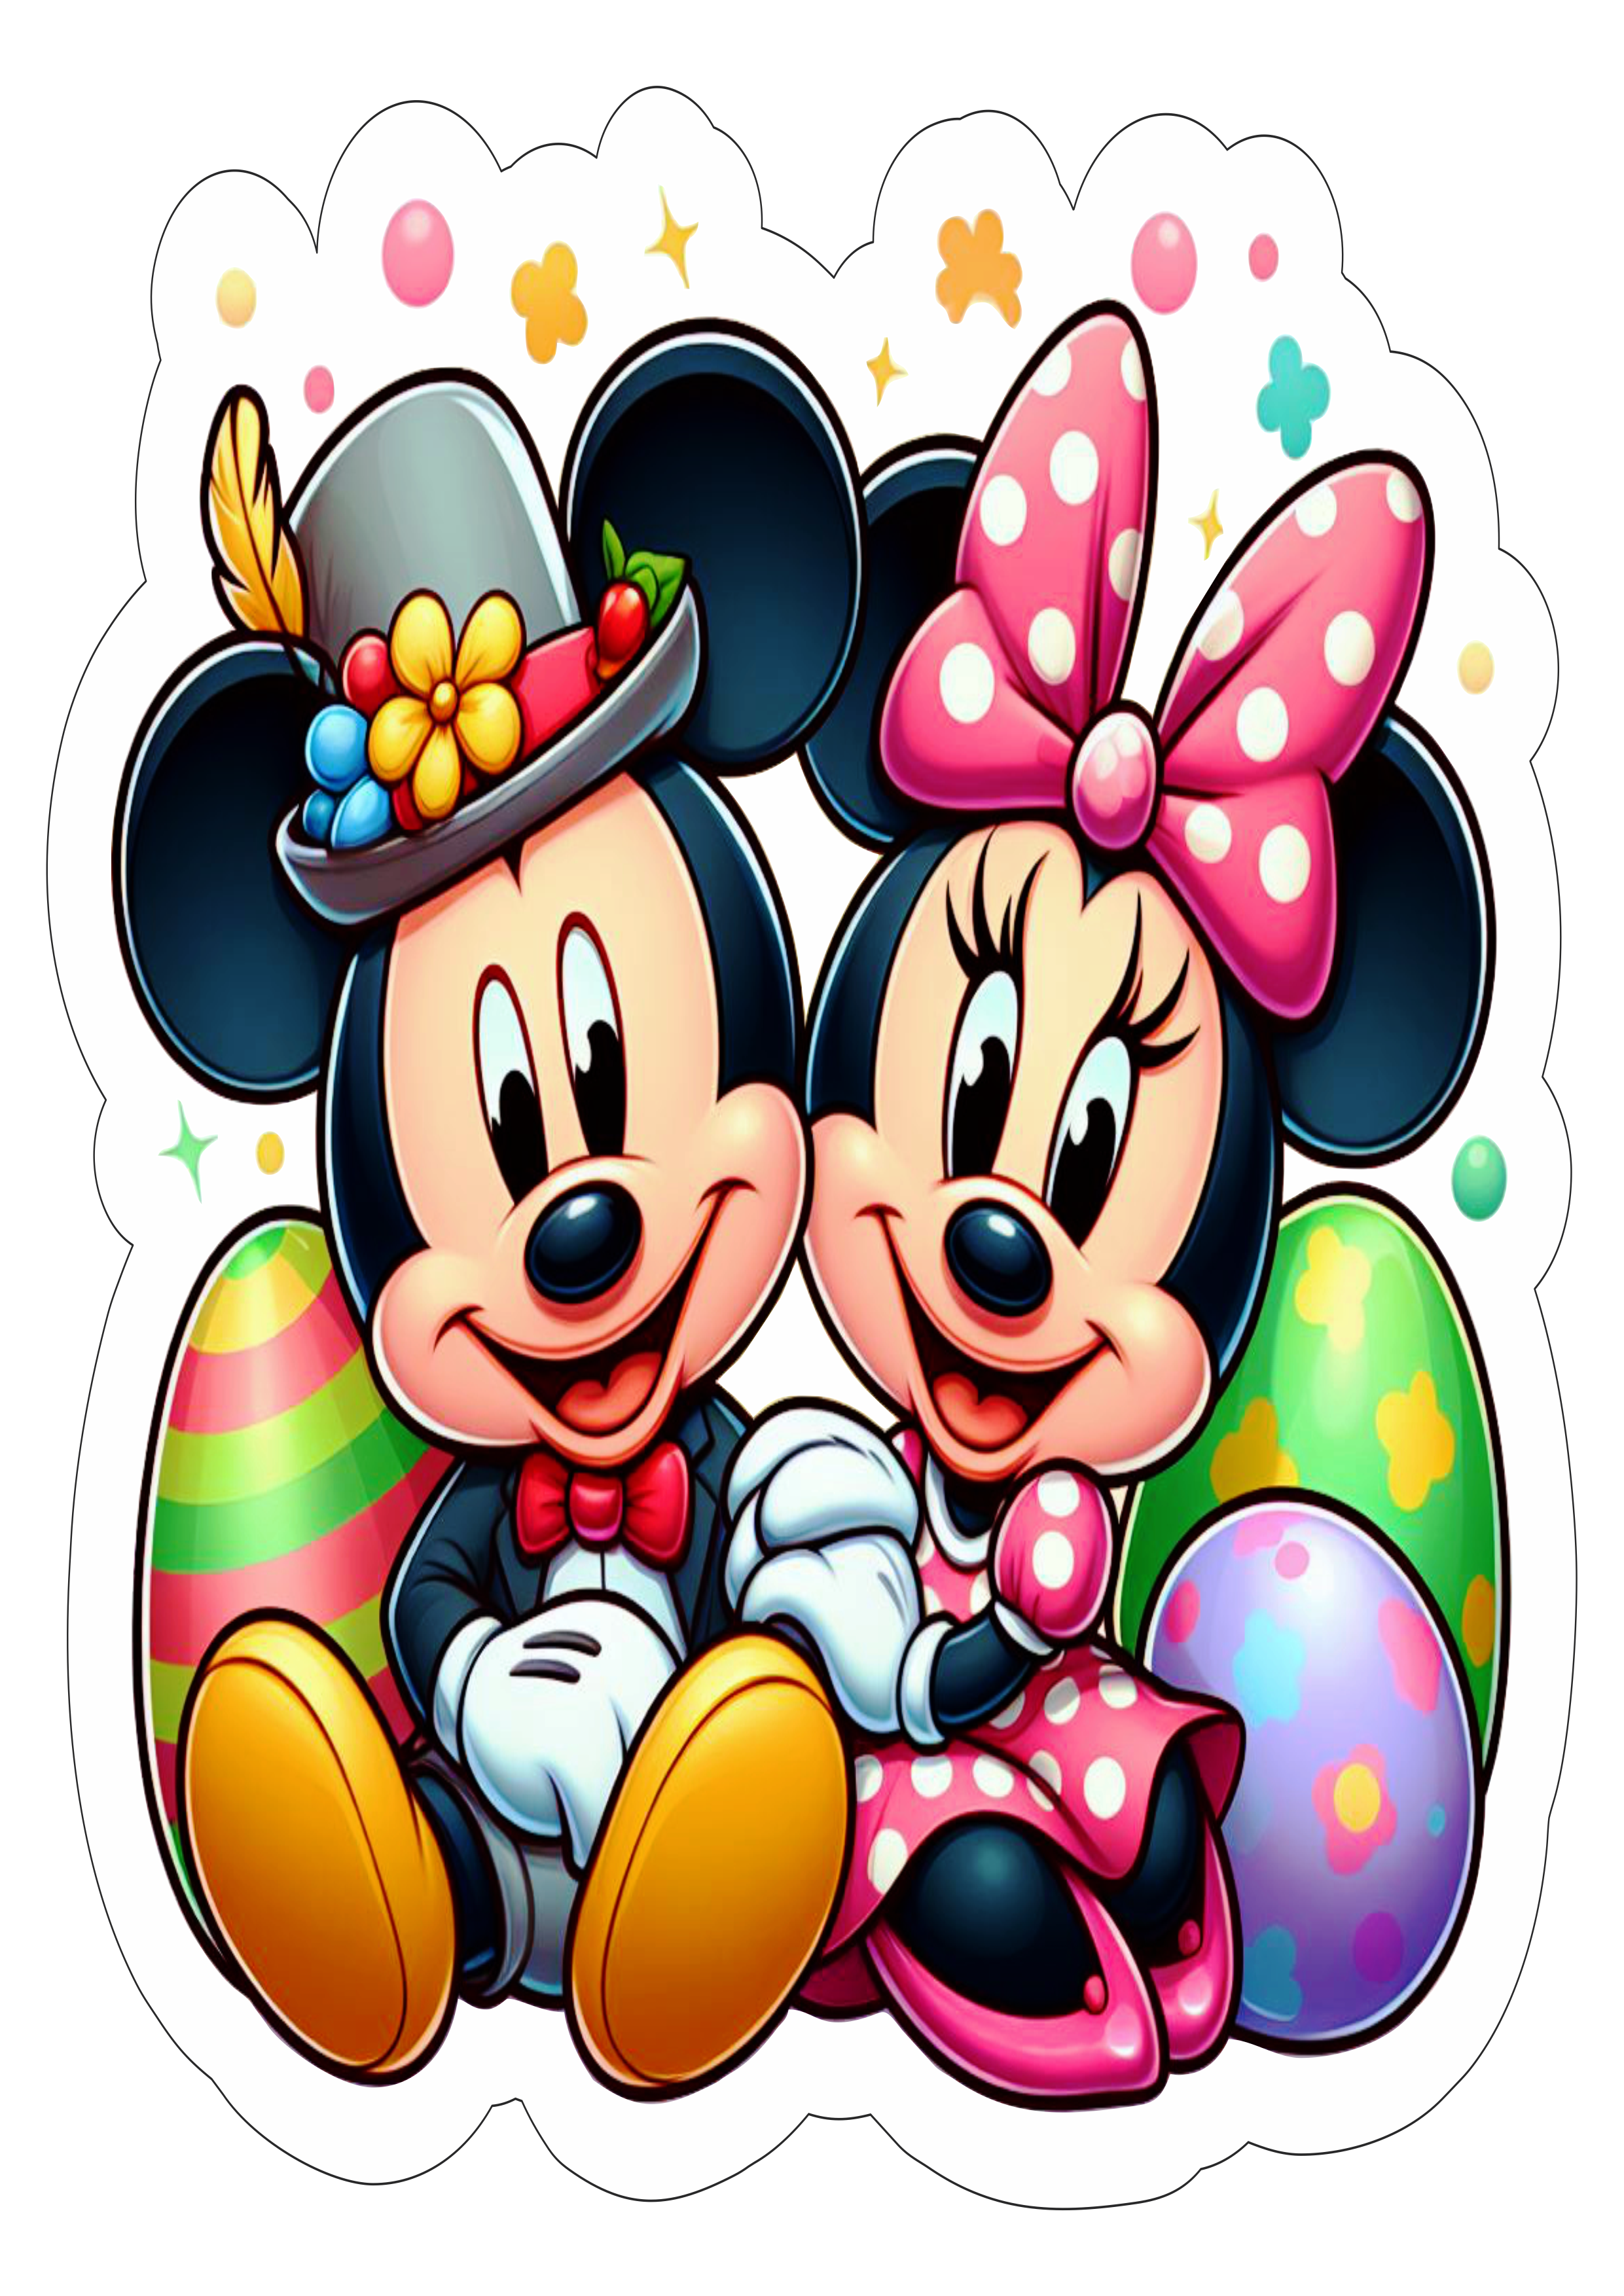 Mickey e Minnie especial de páscoa fundo transparente png